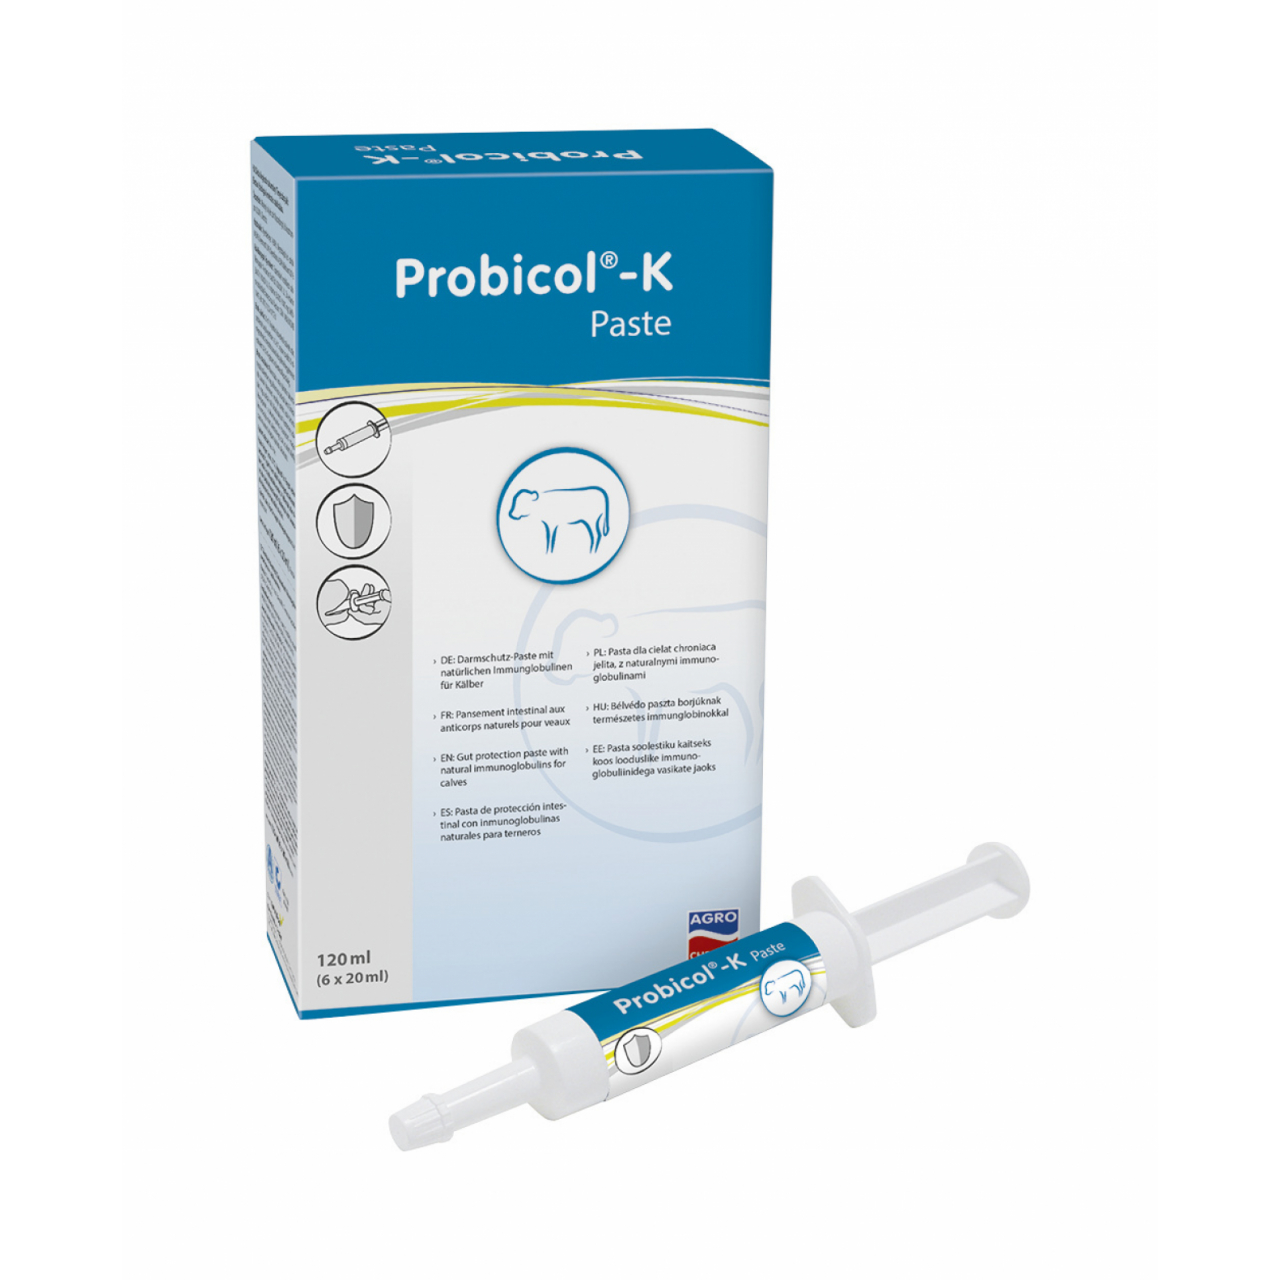 Probicol®-K bélvédő paszta természetes immunglobulinokkal borjaknak